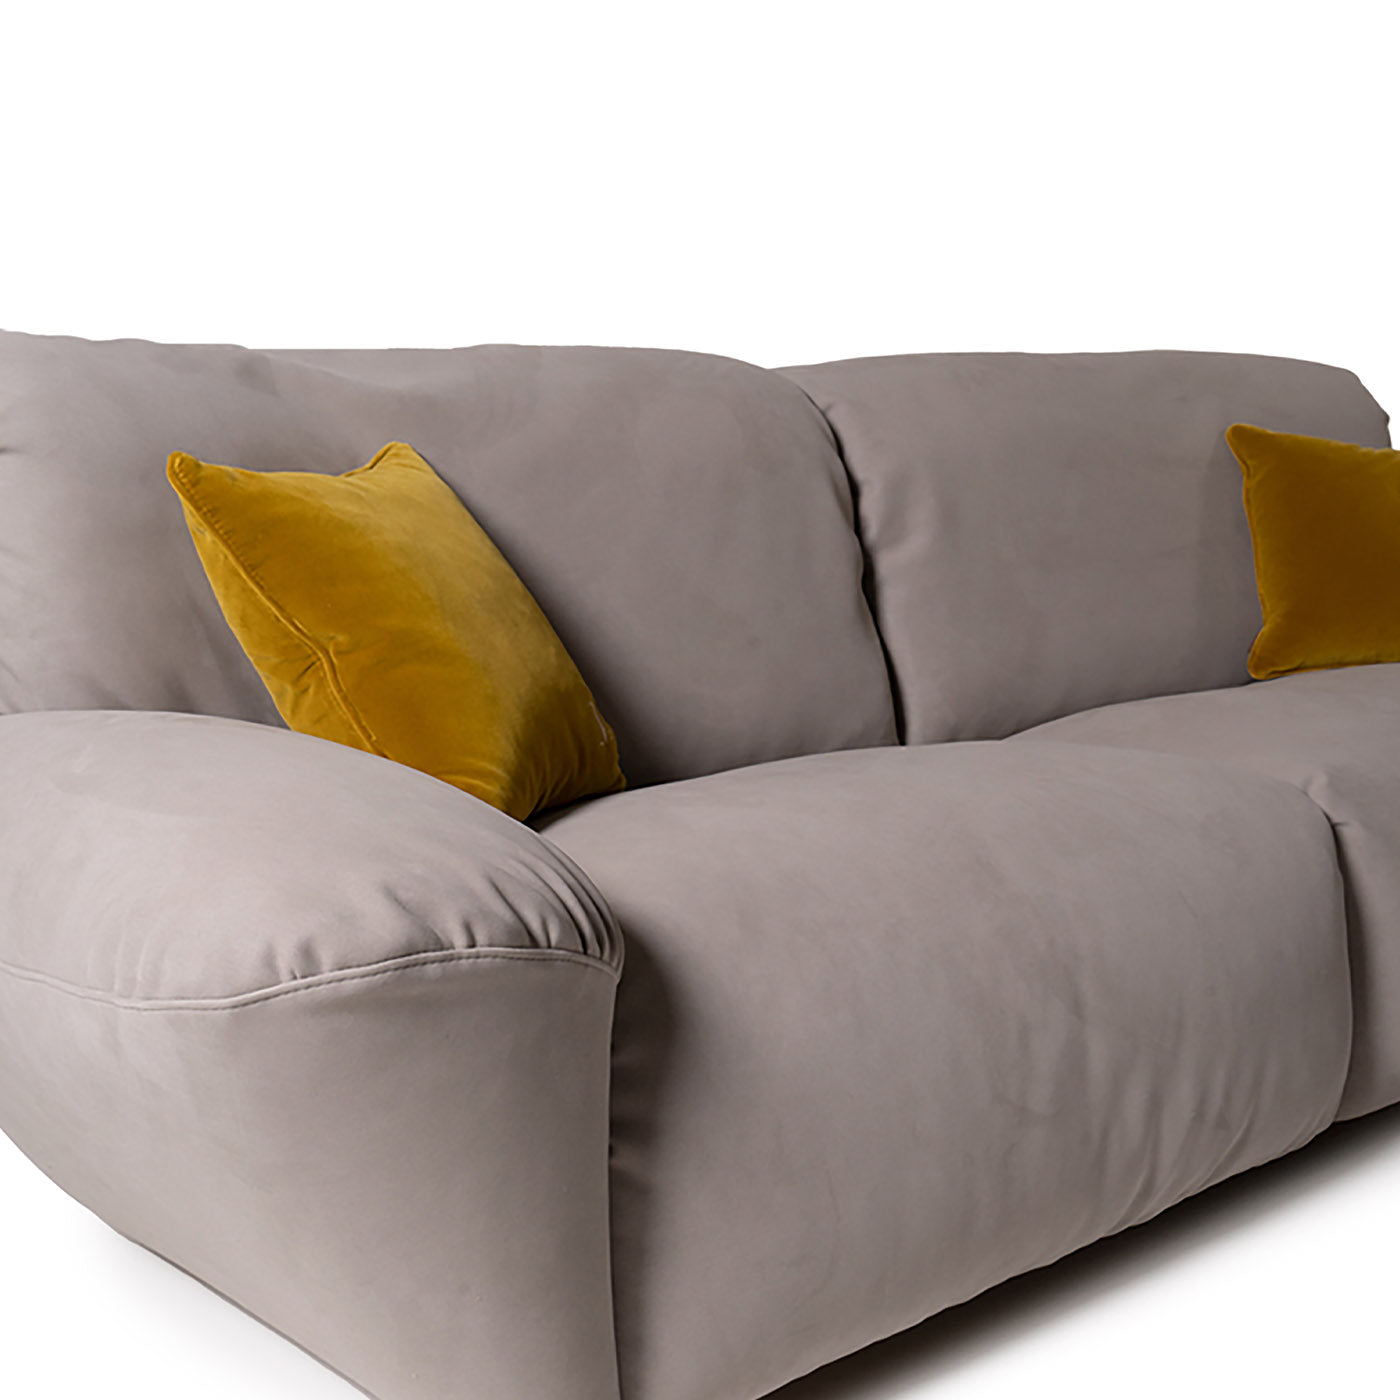 Beluga 2-sitziges midi-sofa von Marco und Giulio Mantellassi - Alternative Ansicht 3